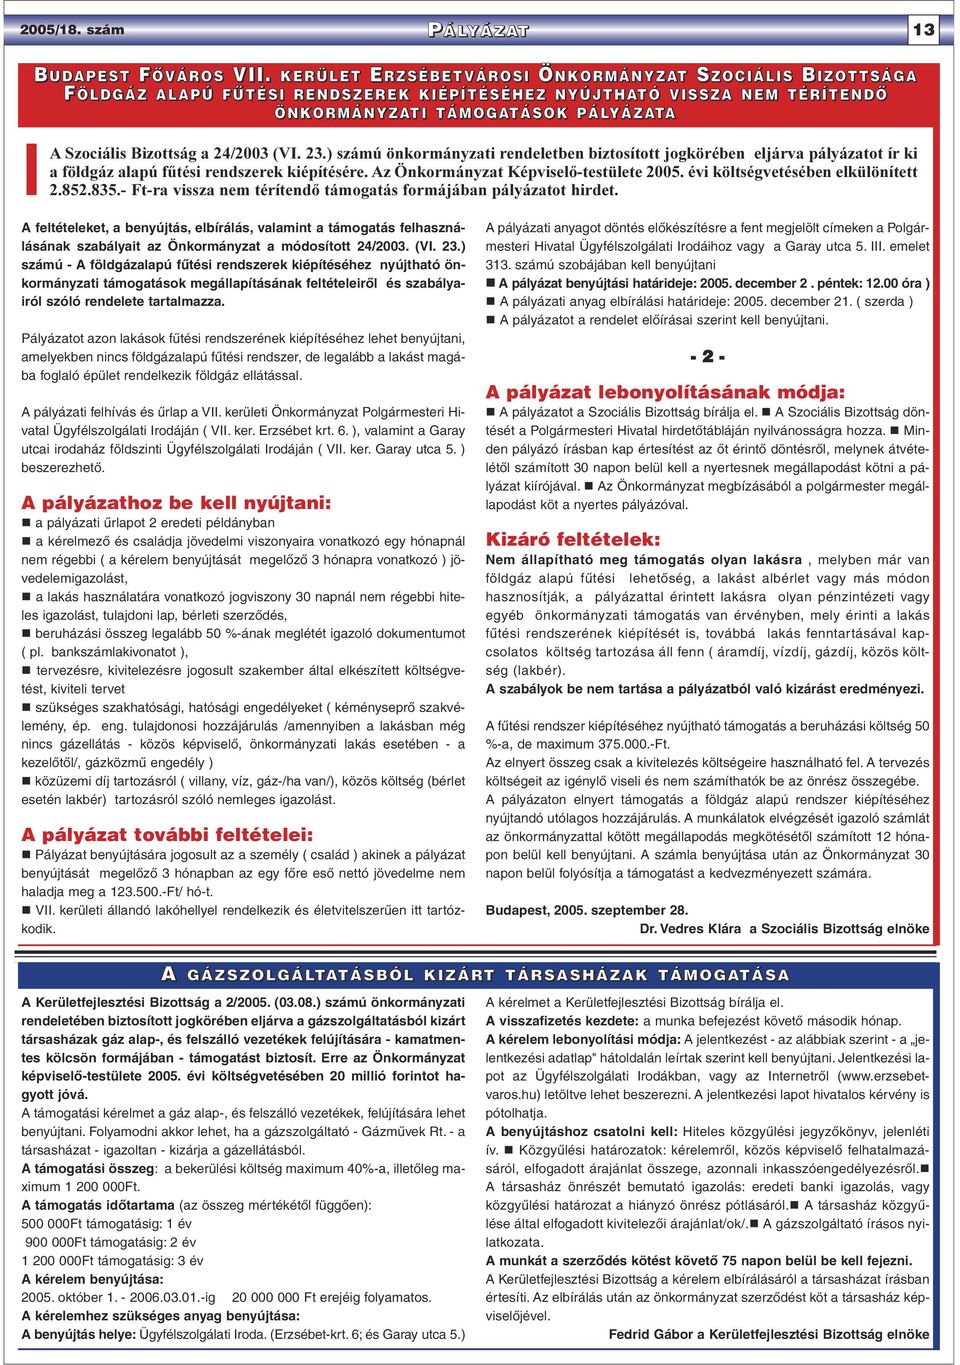 24/2003 (VI. 23.) számú önkormányzati rendeletben biztosított jogkörében eljárva pályázatot ír ki a földgáz alapú fûtési rendszerek kiépítésére. Az Önkormányzat Képviselõ-testülete 2005.